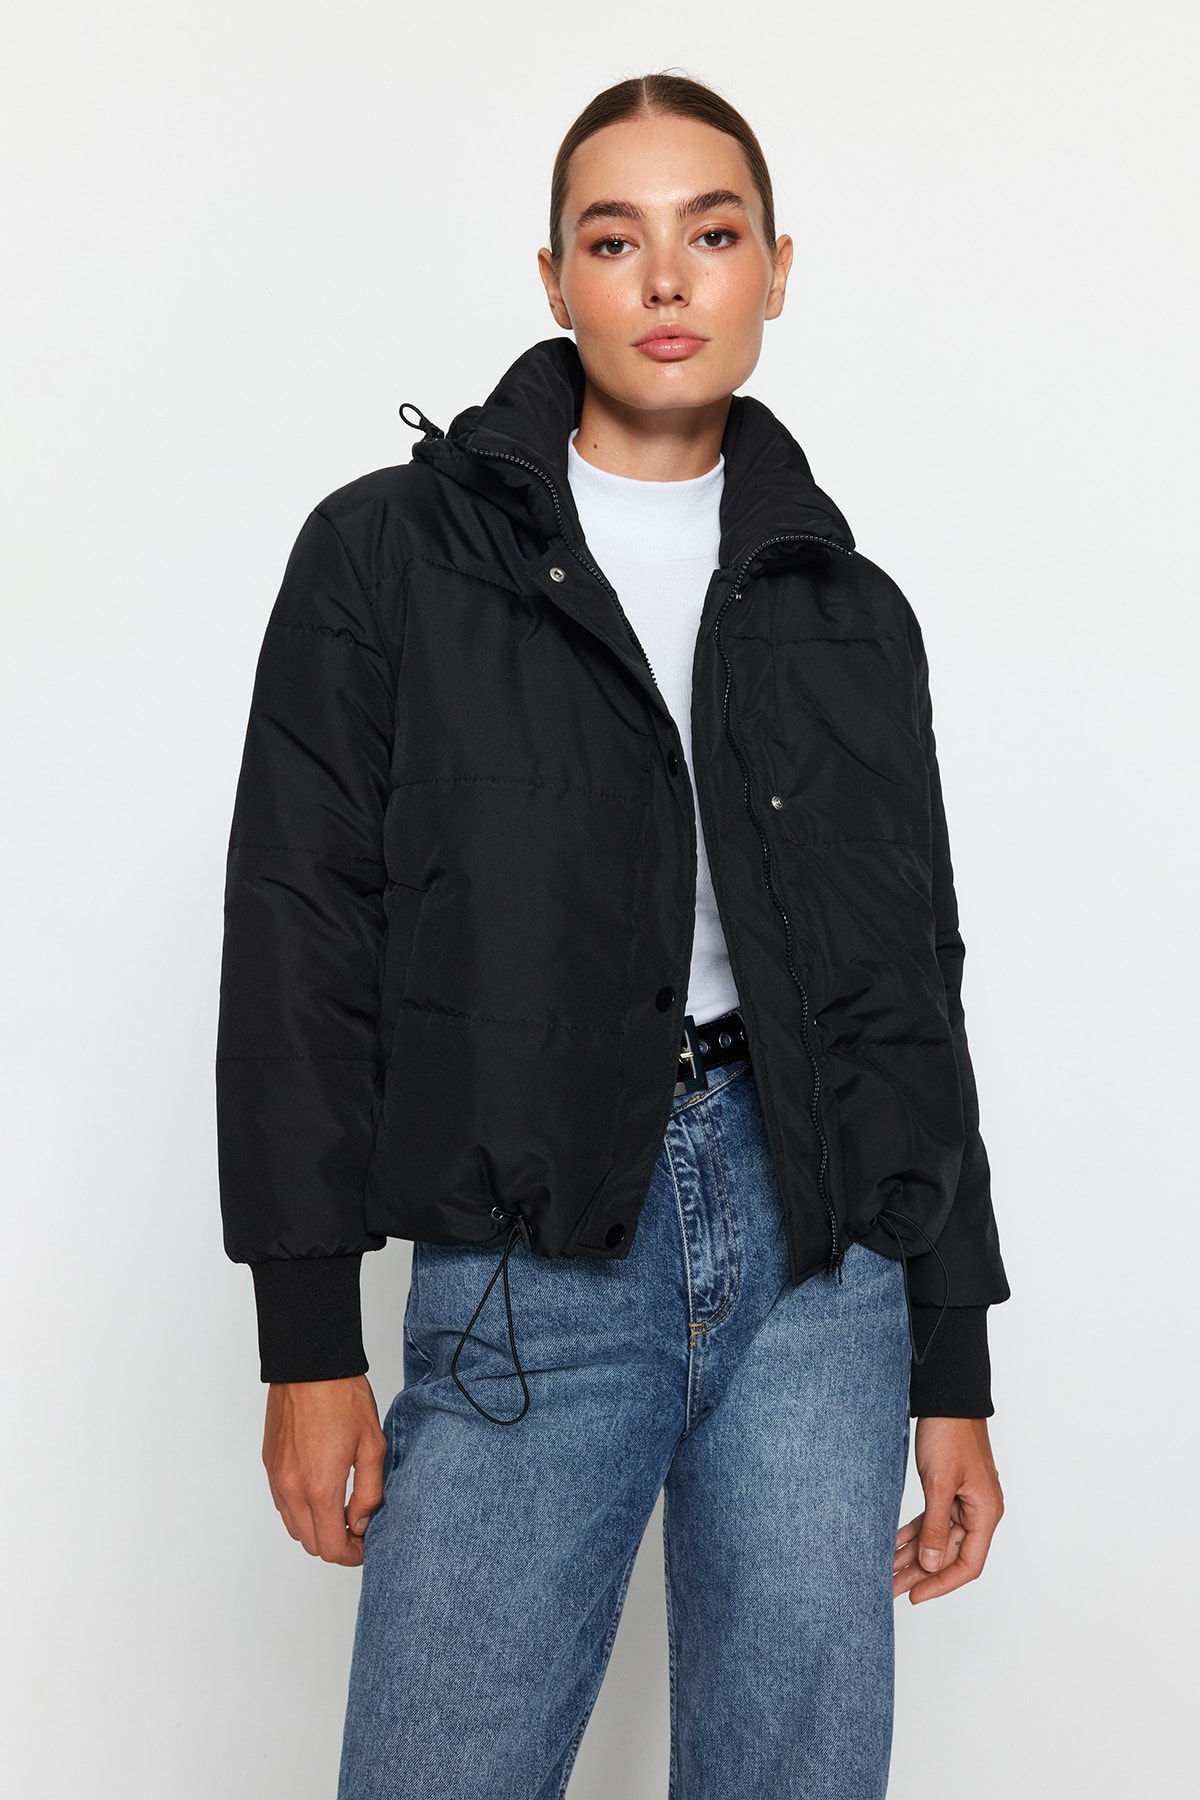 Куртка-пуховик Trendyol оверсайз водоотталкивающая стеганая с капюшоном, черный куртка стеганая signature утепленная с капюшоном 18 лет 180 см черный